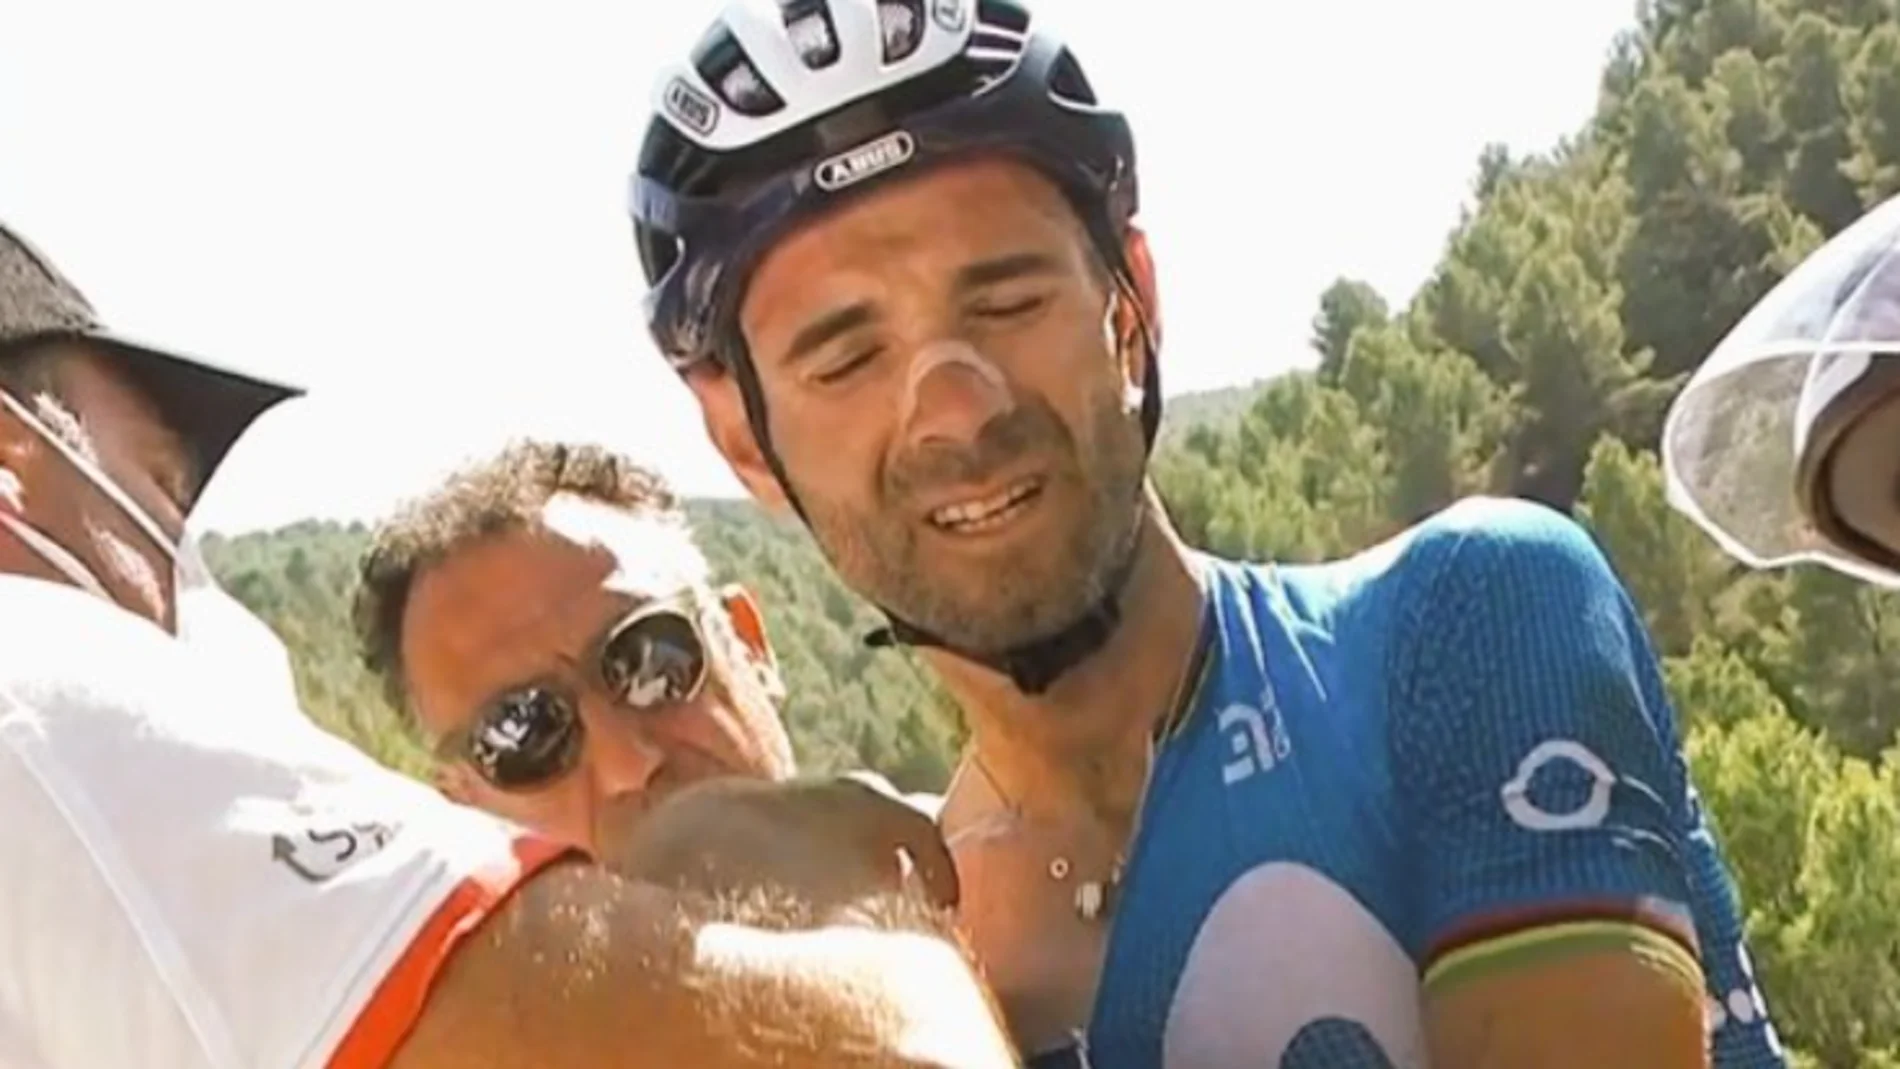 La dura caída de Alejandro Valverde que le ha obligado a abandonar la Vuelta a España